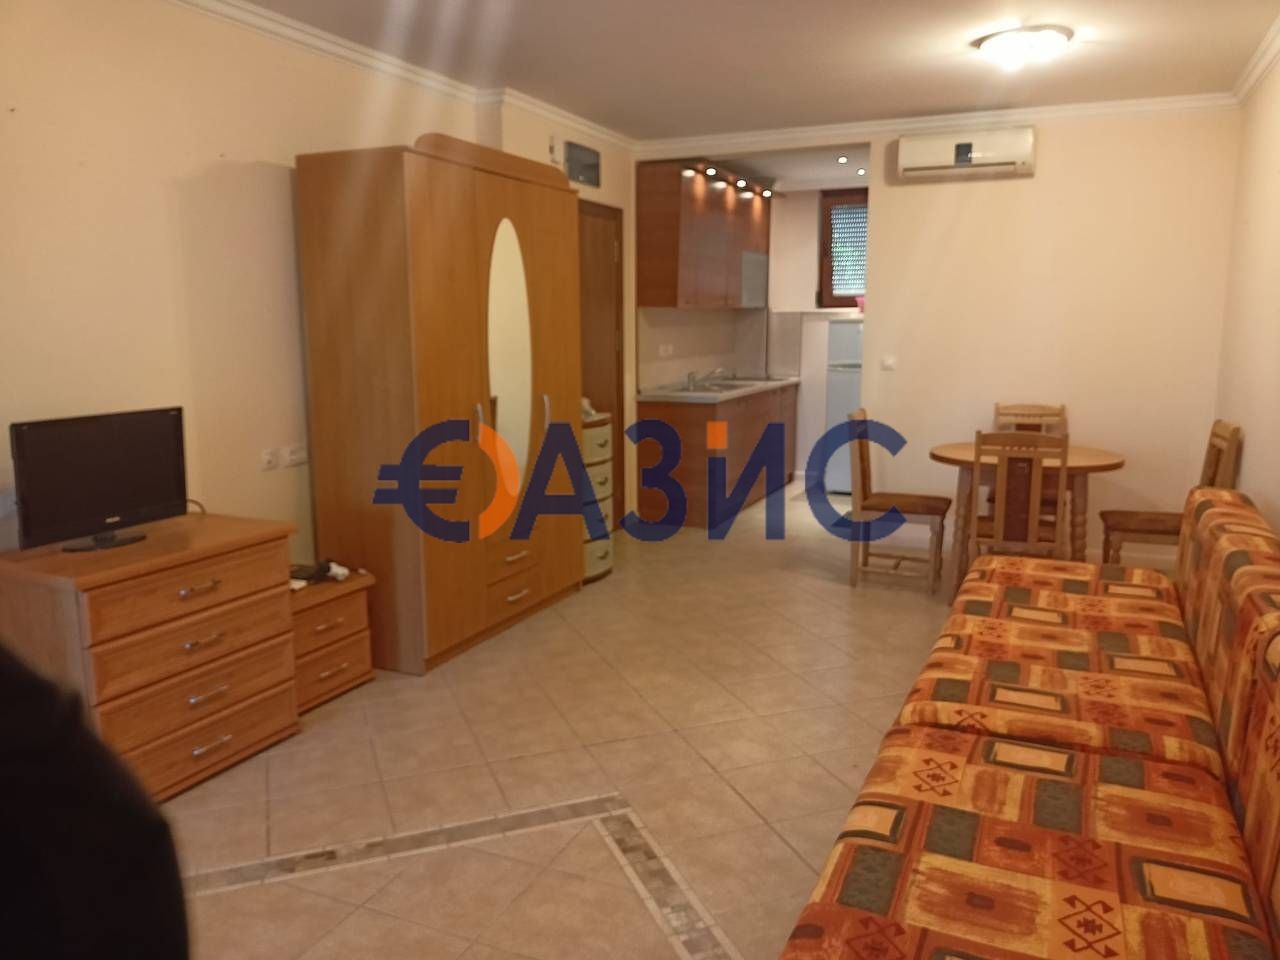 Apartment in Sozopol, Bulgaria, 95 sq.m - picture 1